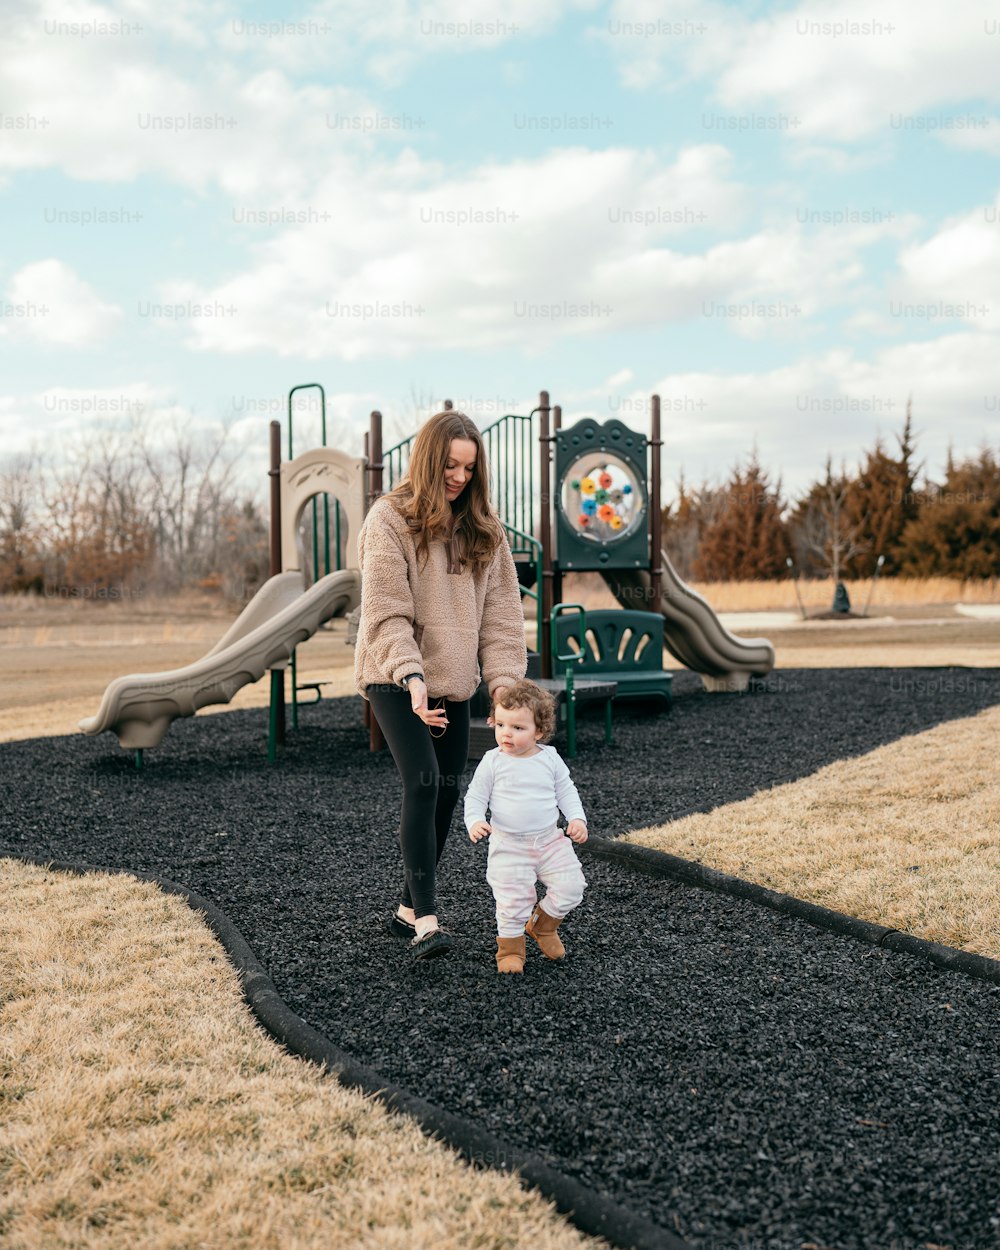 Una donna e un bambino in piedi davanti a un parco giochi